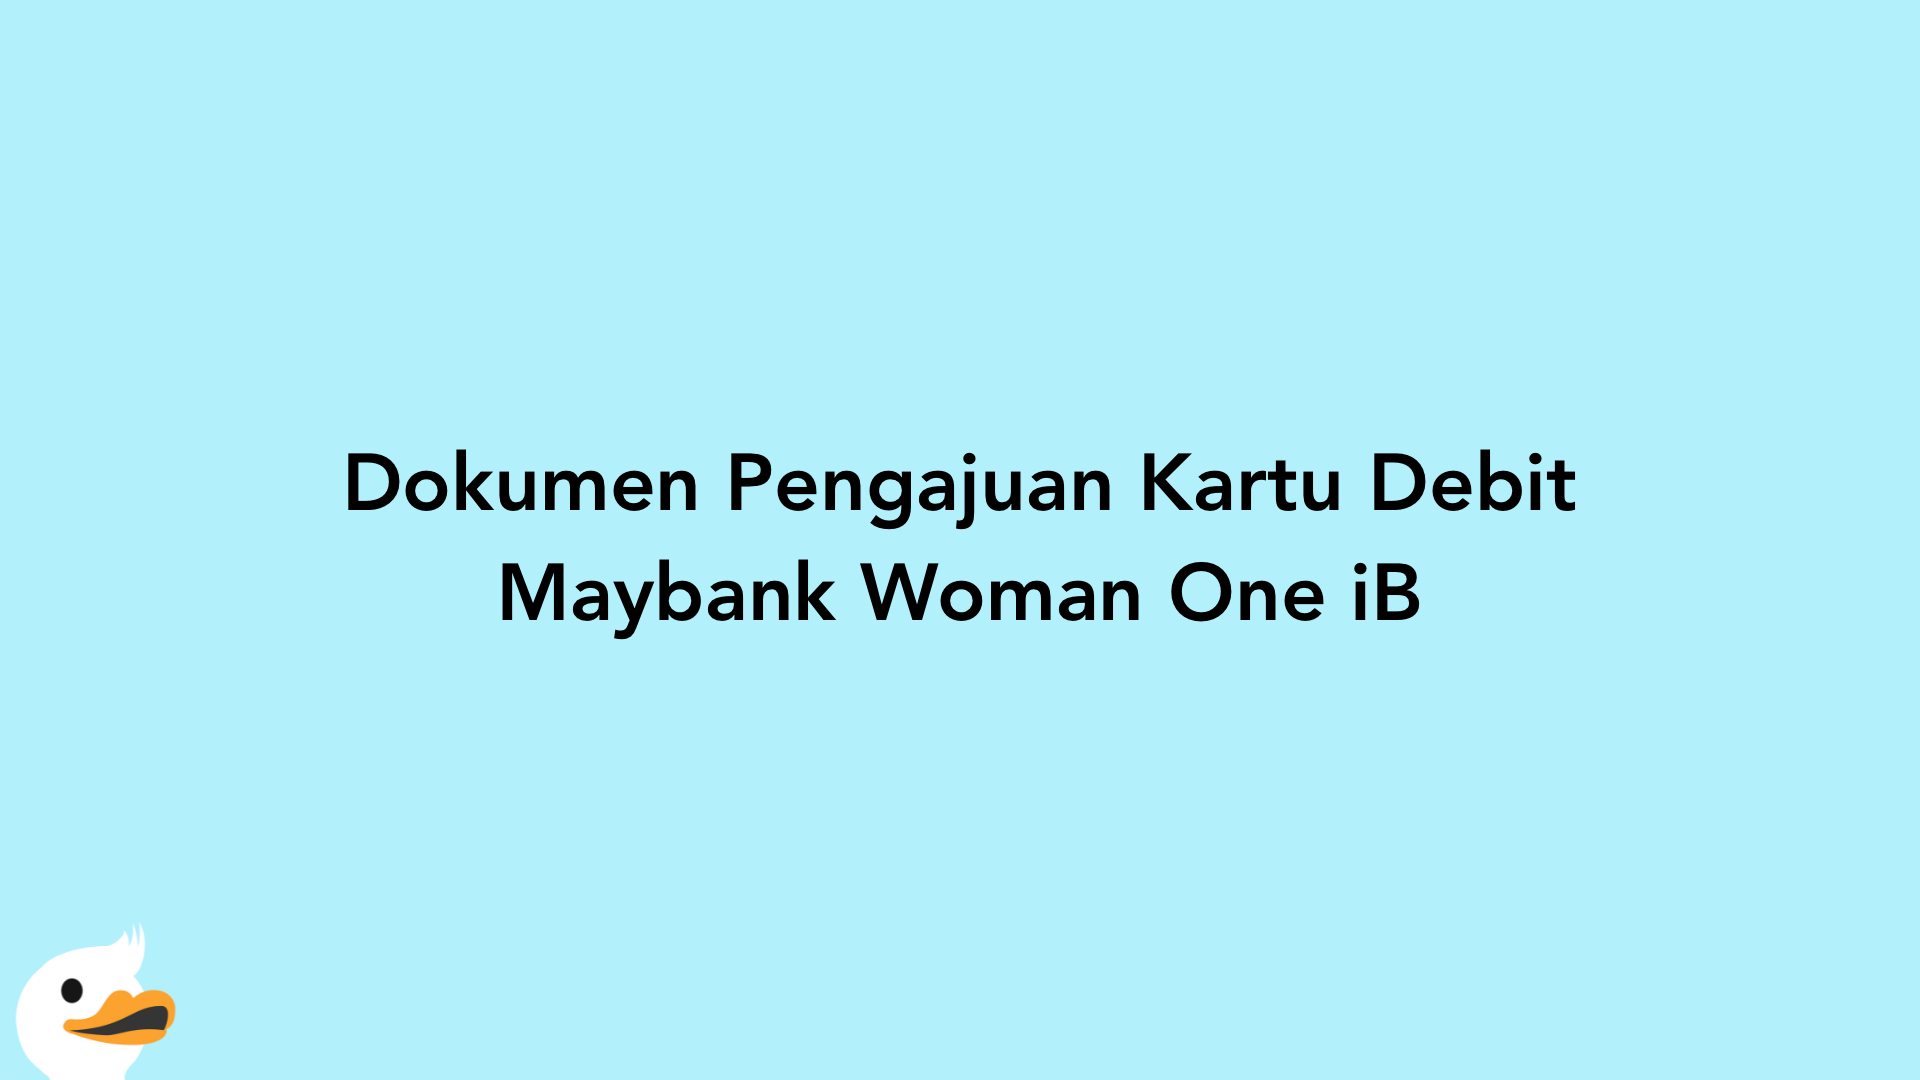 Dokumen Pengajuan Kartu Debit Maybank Woman One iB